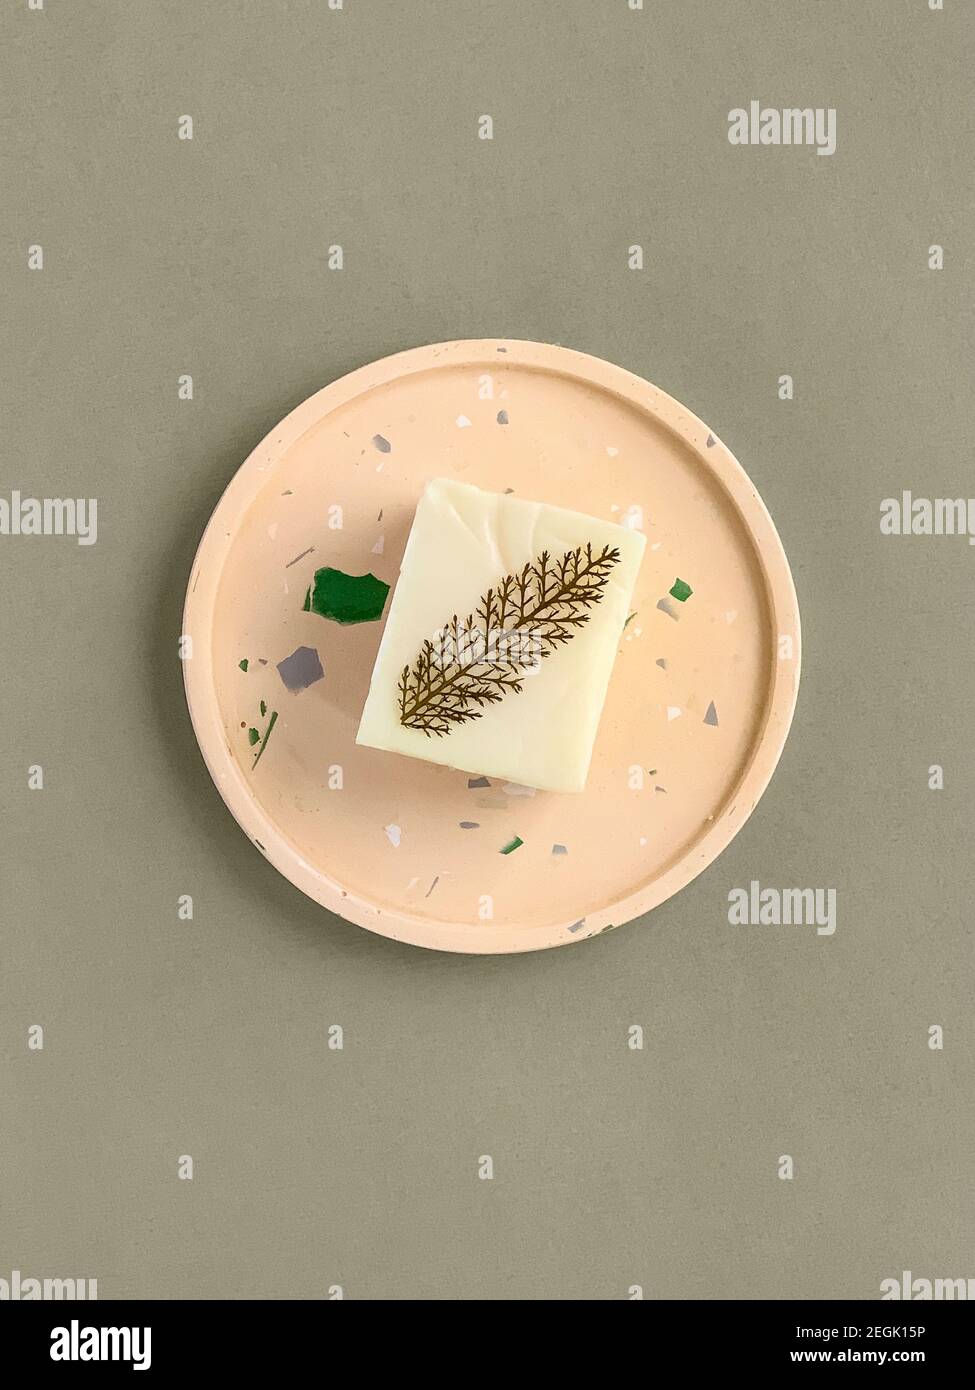 Natürliche hausgemachte Seife auf einem Betontablett Stockfotografie - Alamy